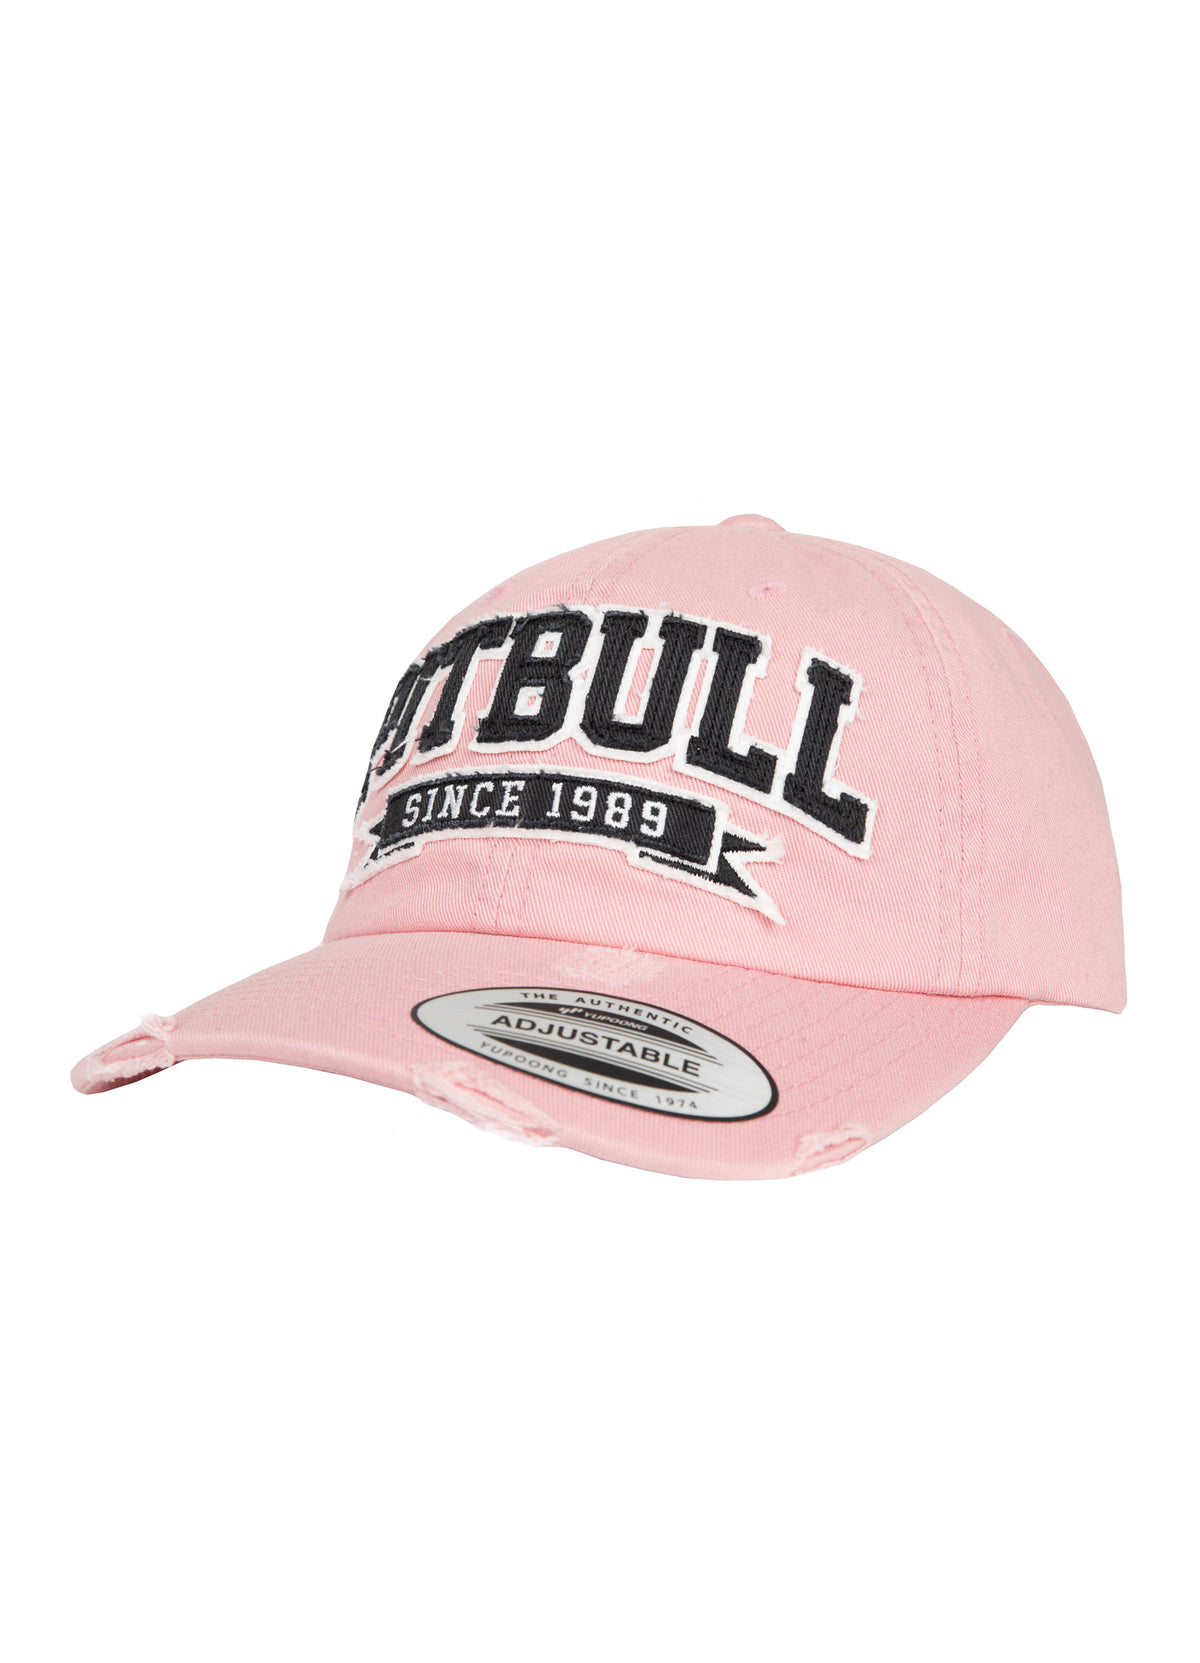 Snapback PITBULL SINCE 1989 Powder Pink - Pitbull West Coast International Store 